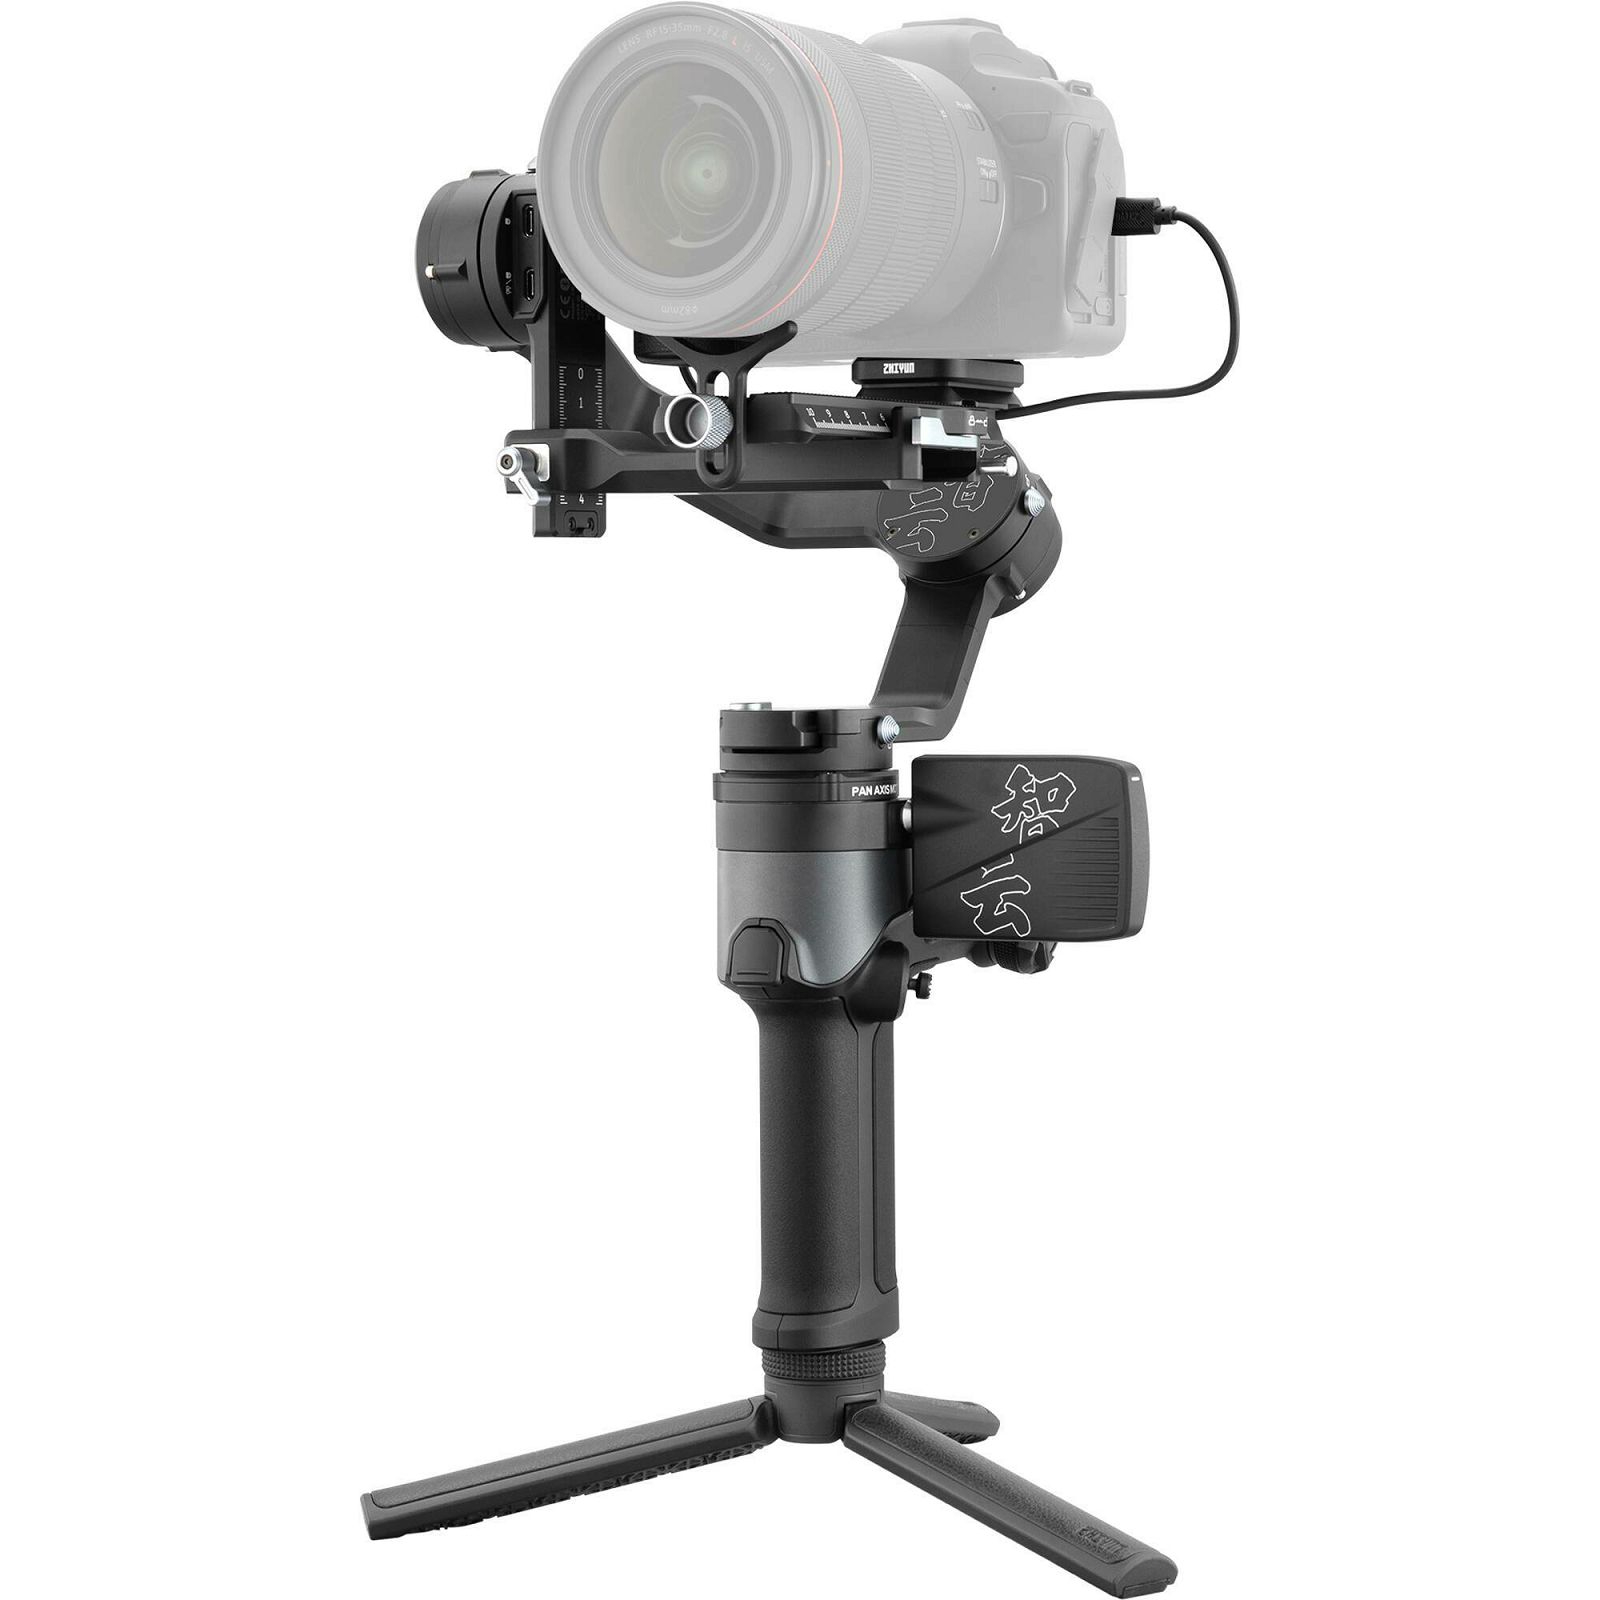 Zhiyun Weebill 2 gimbal stabilizator za kamere i DSLR fotoaparate (CR120)